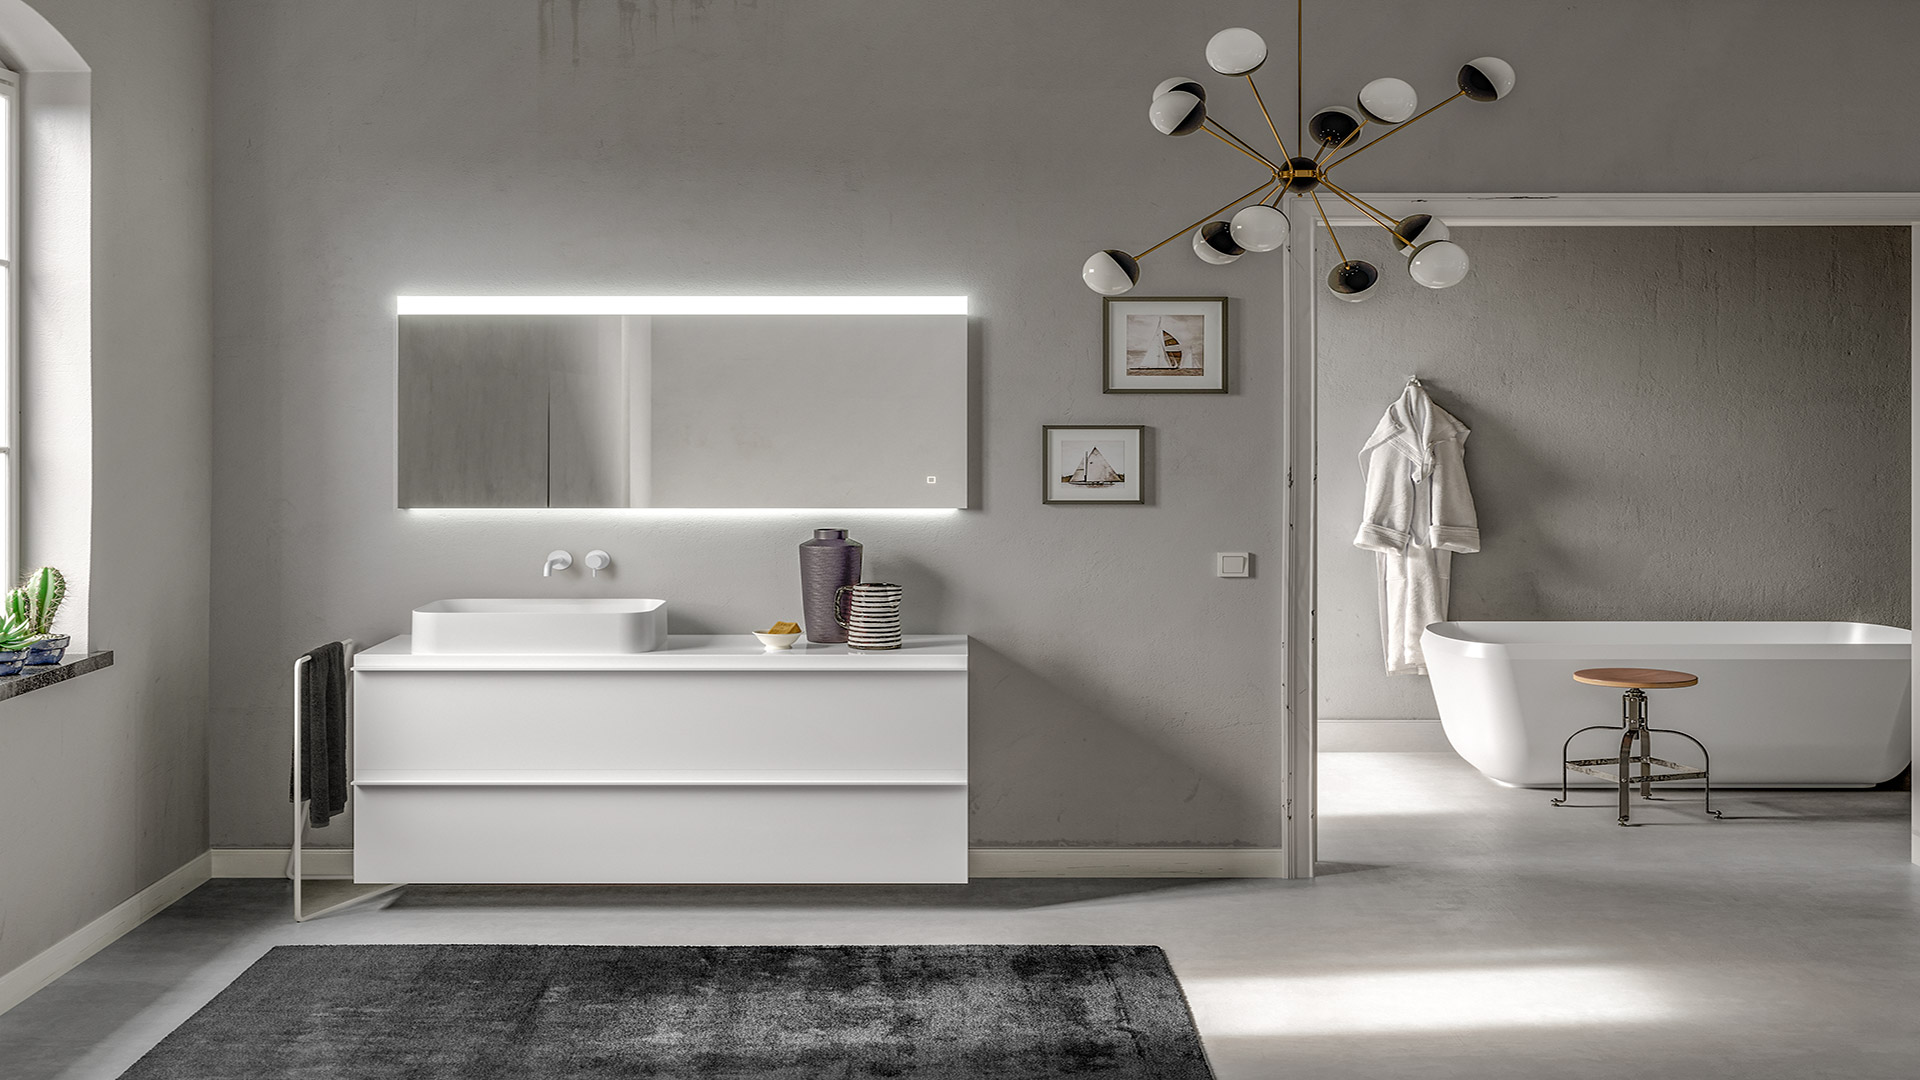 Risparmiare spazio in bagno con mobili modulari